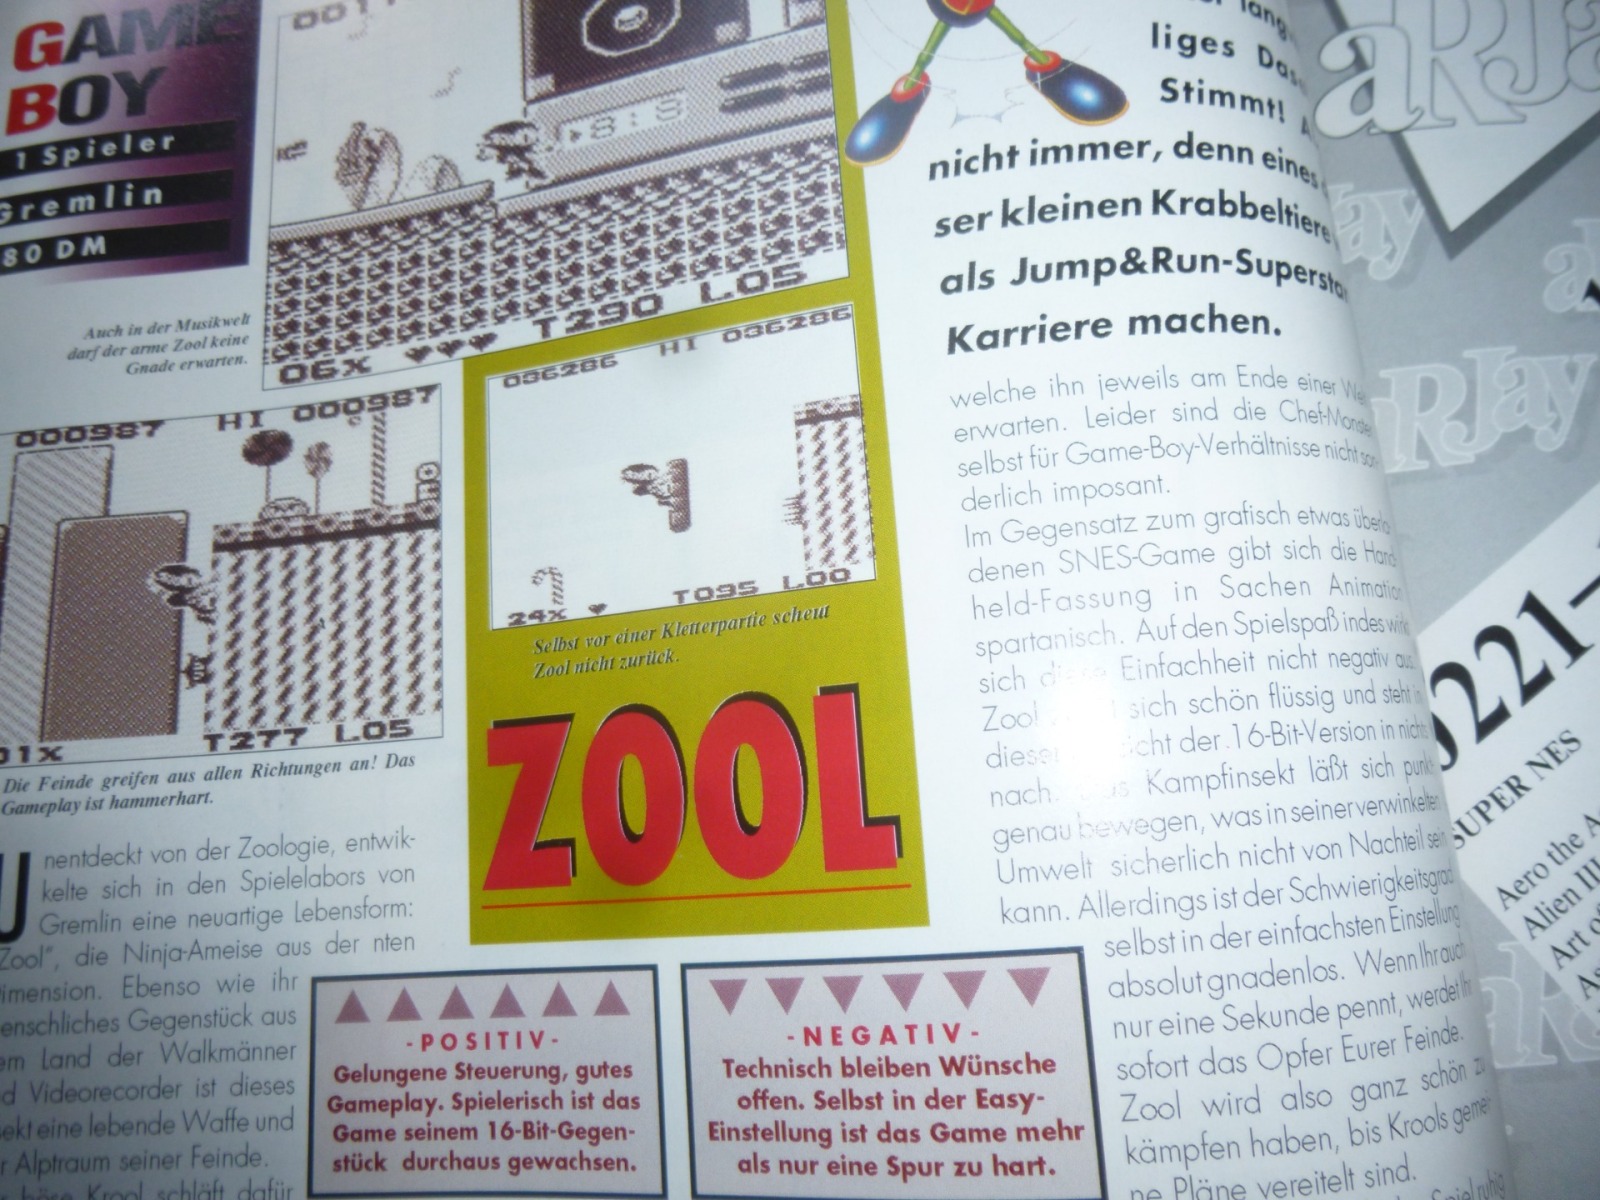 TOTAL Das unabhängige Magazin - 100 Nintendo - Ausgabe 12/93 1993 17